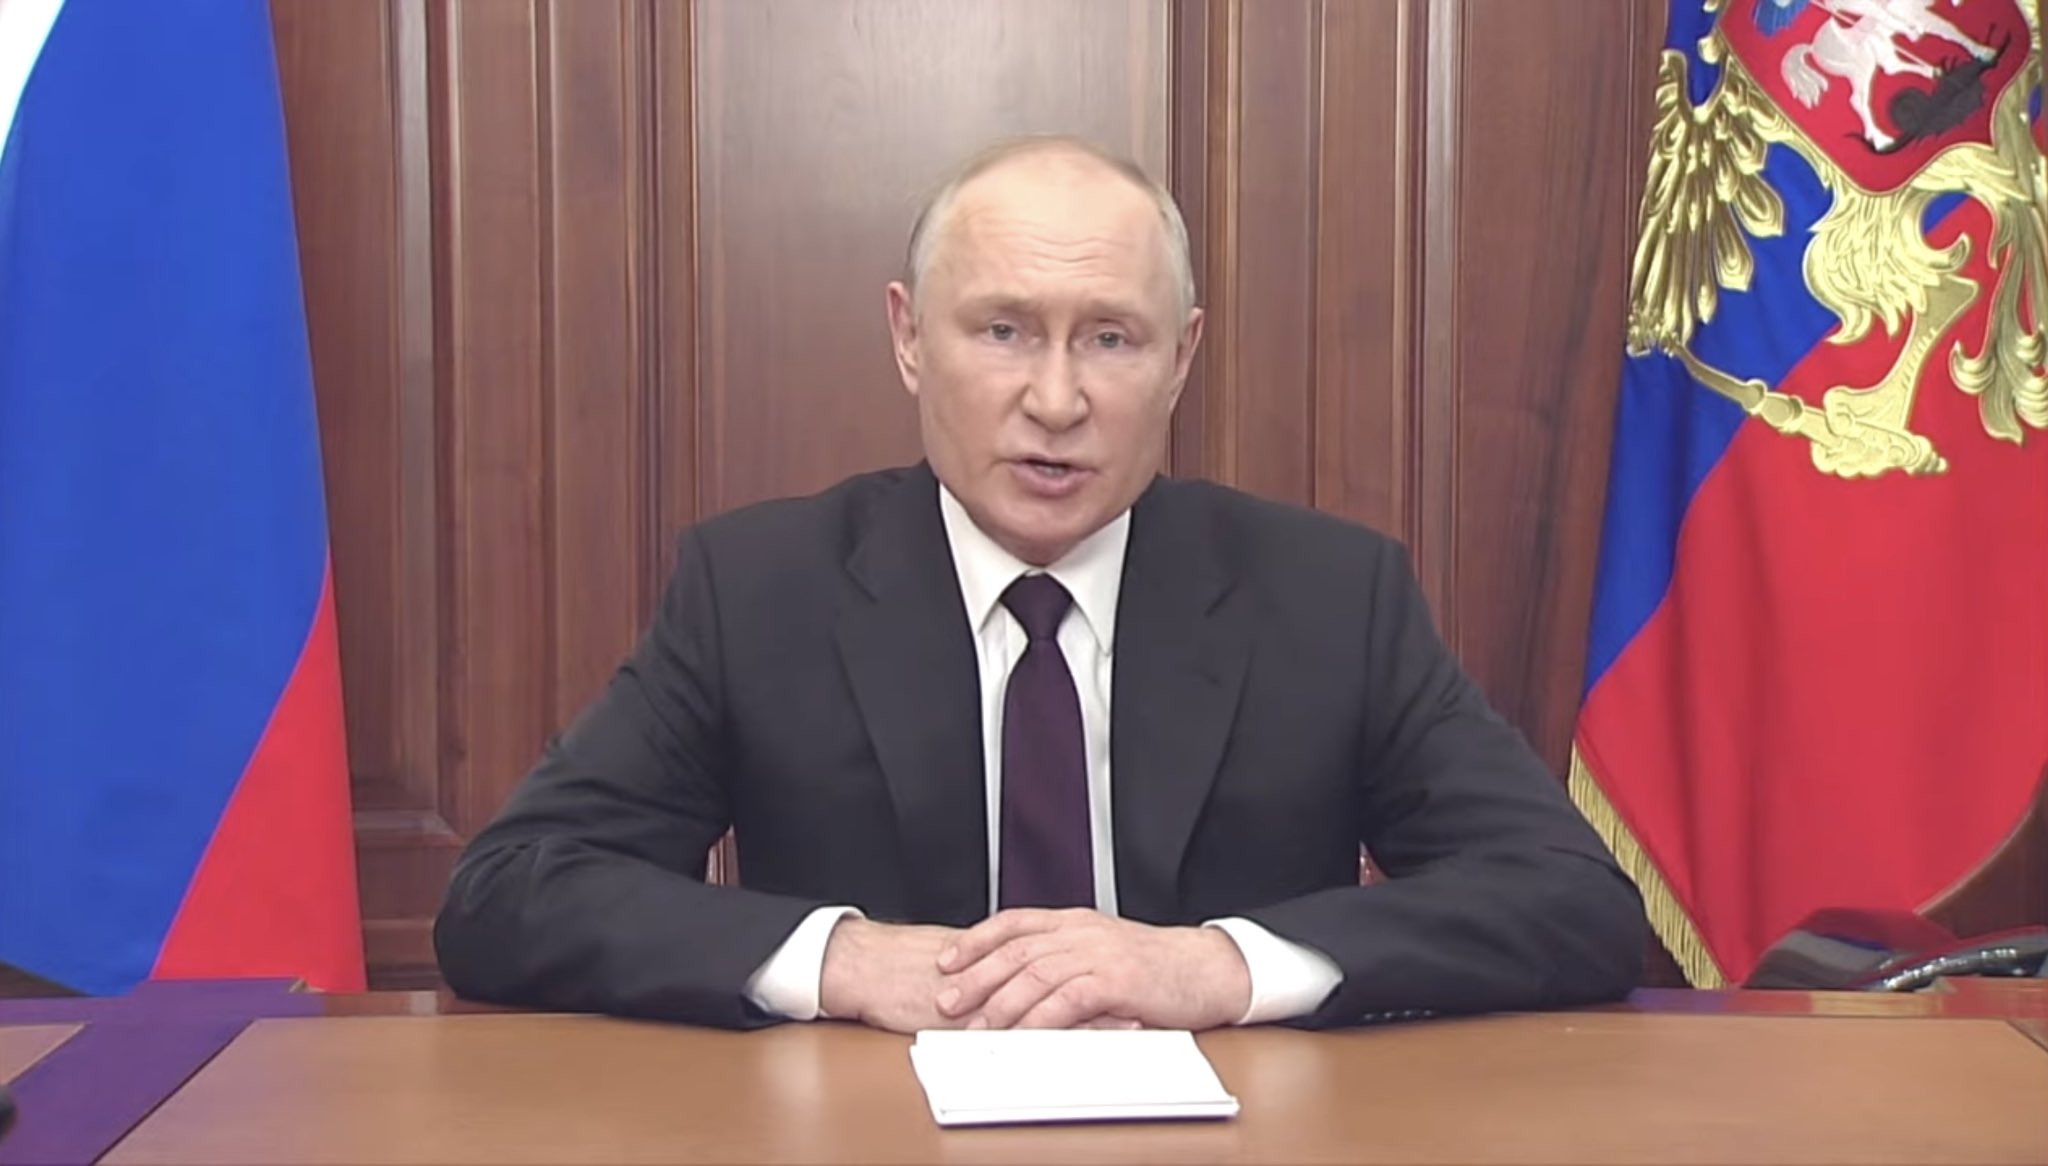 Putin si dice pronto ad una tregua purché quello che ha illegalmente annesso diventi Russia